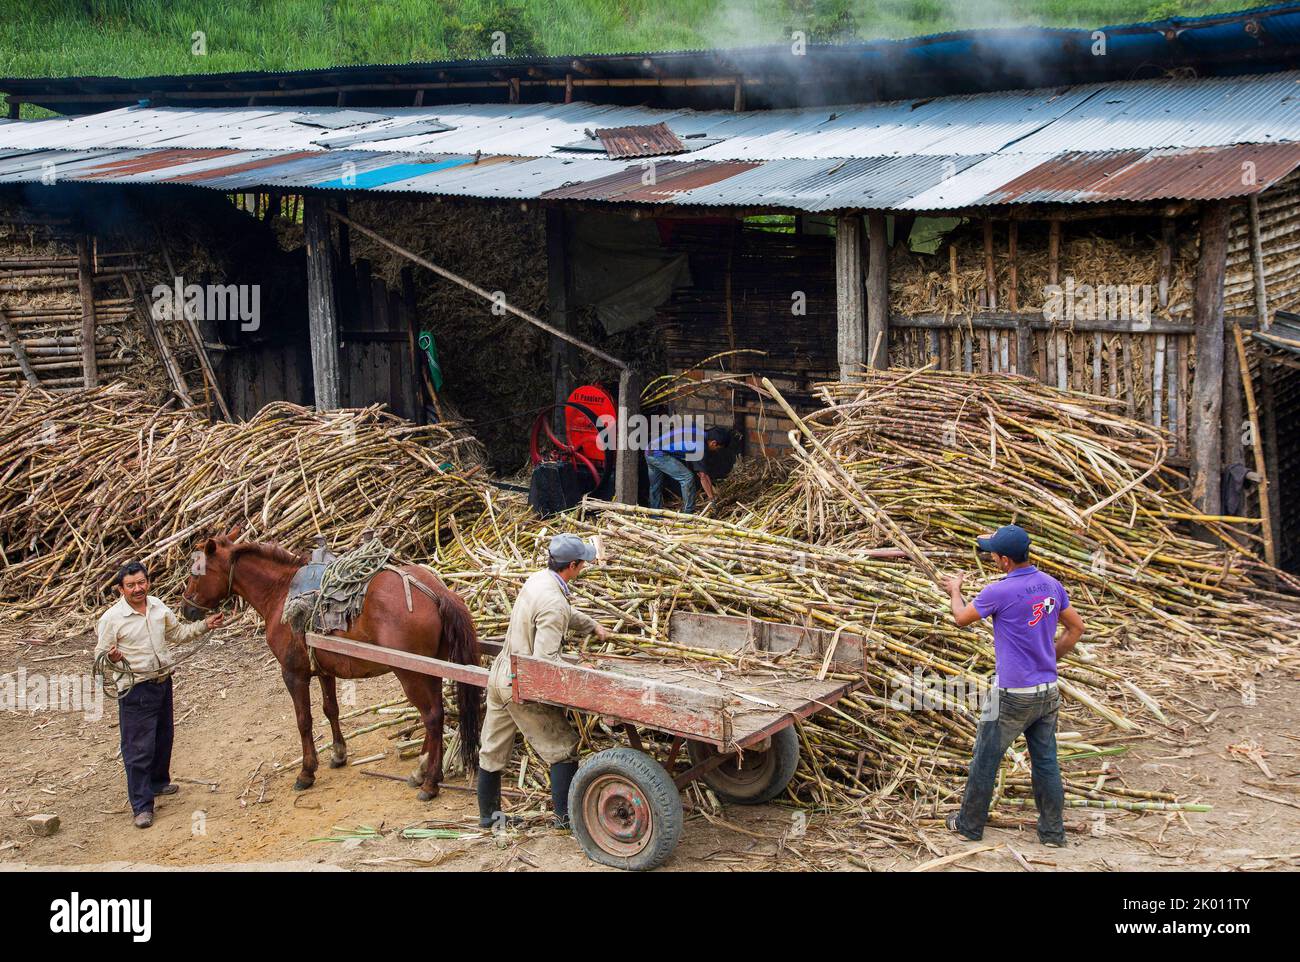 Colombia, dipartimento di Huila, regione di San Agustin, canna da zucchero è raccolto principalmente da piccoli agricoltori, trasportando la canna in un capannone con una pres meccanica Foto Stock